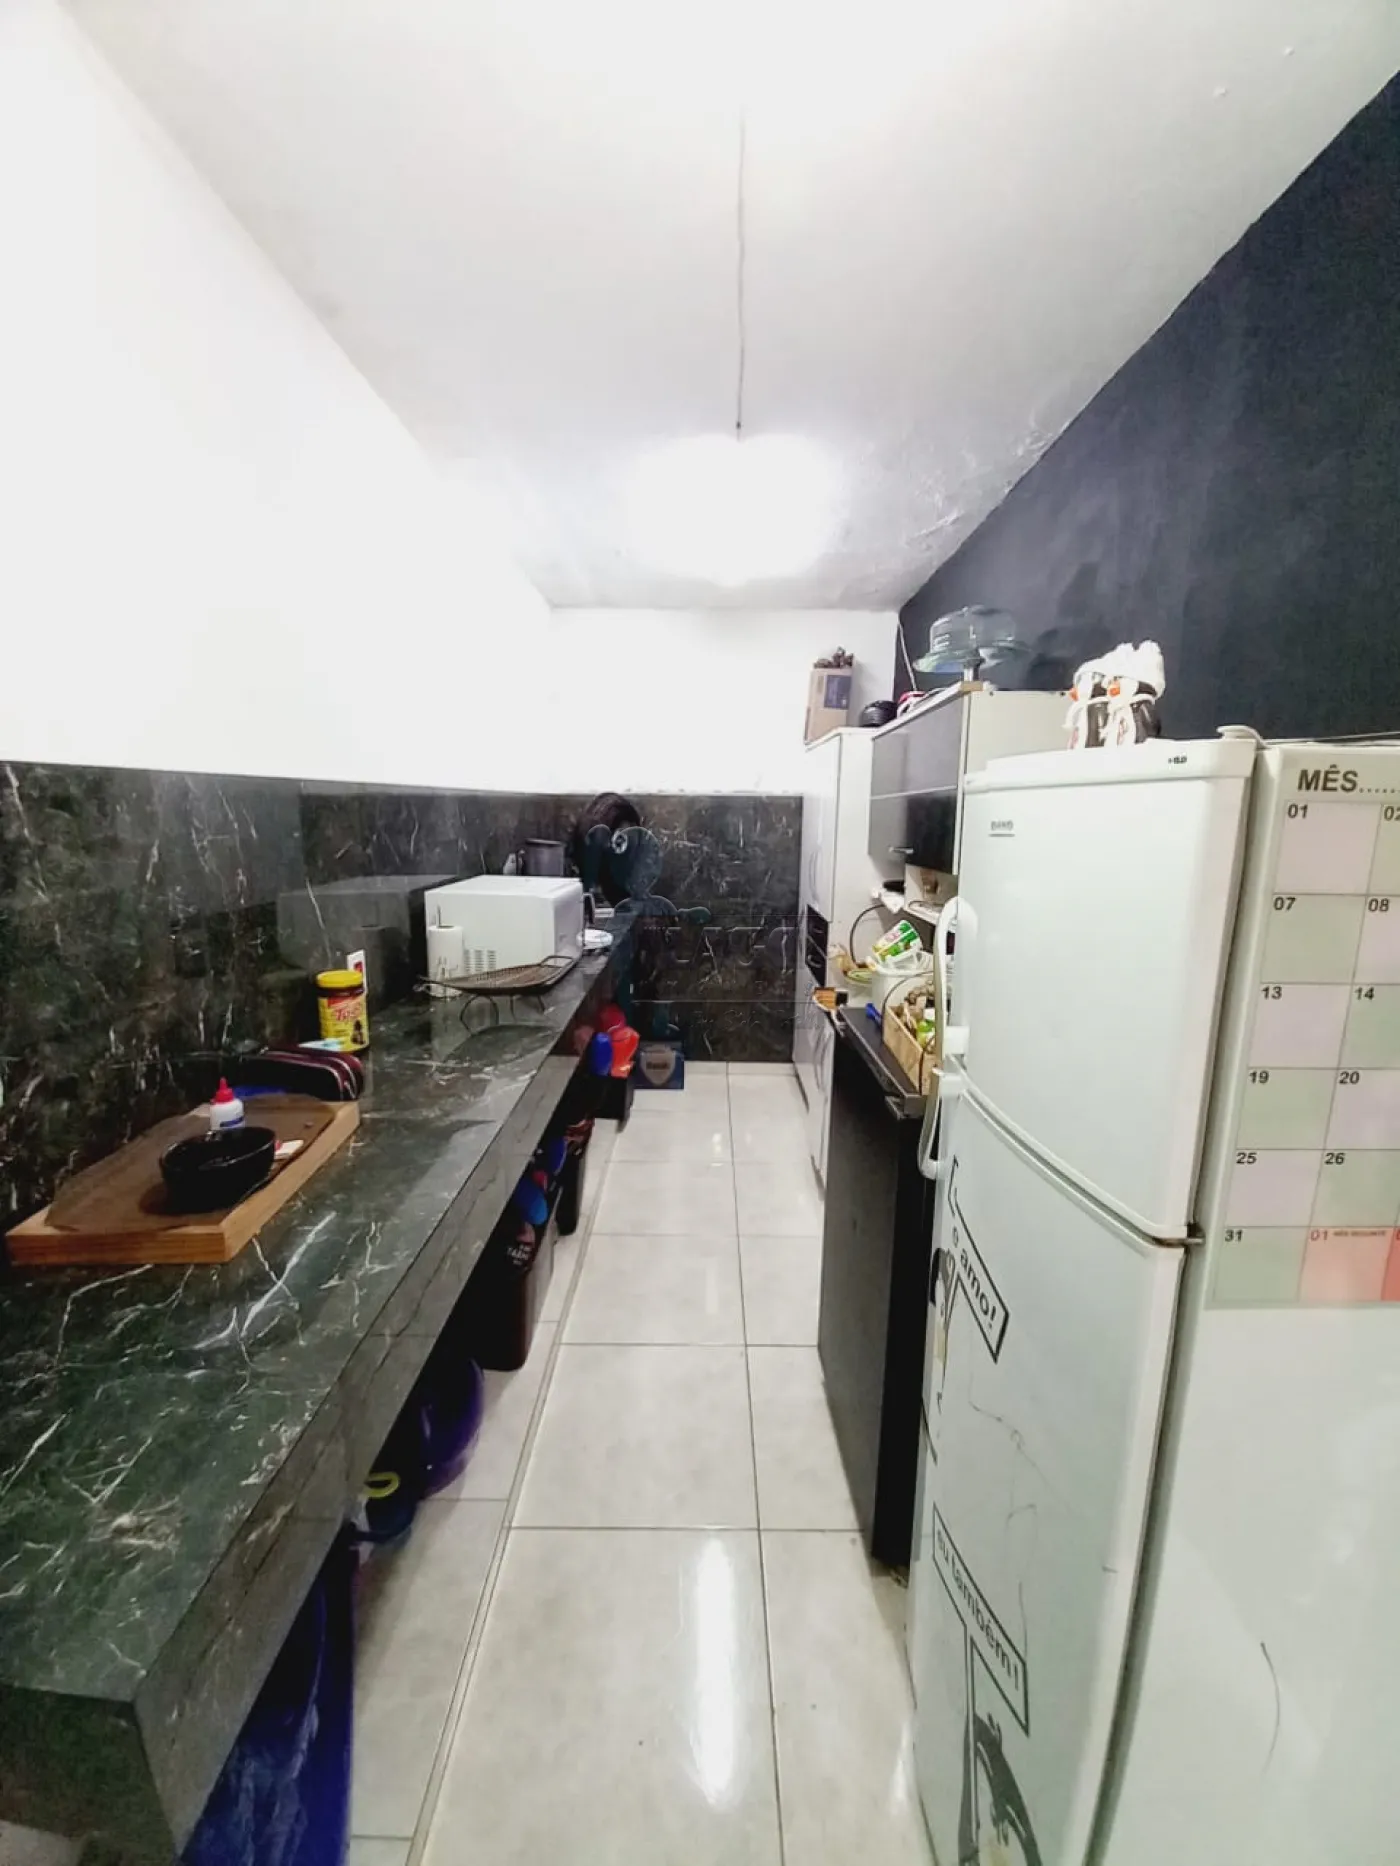 Comprar Casa / Padrão em Ribeirão Preto R$ 310.000,00 - Foto 12